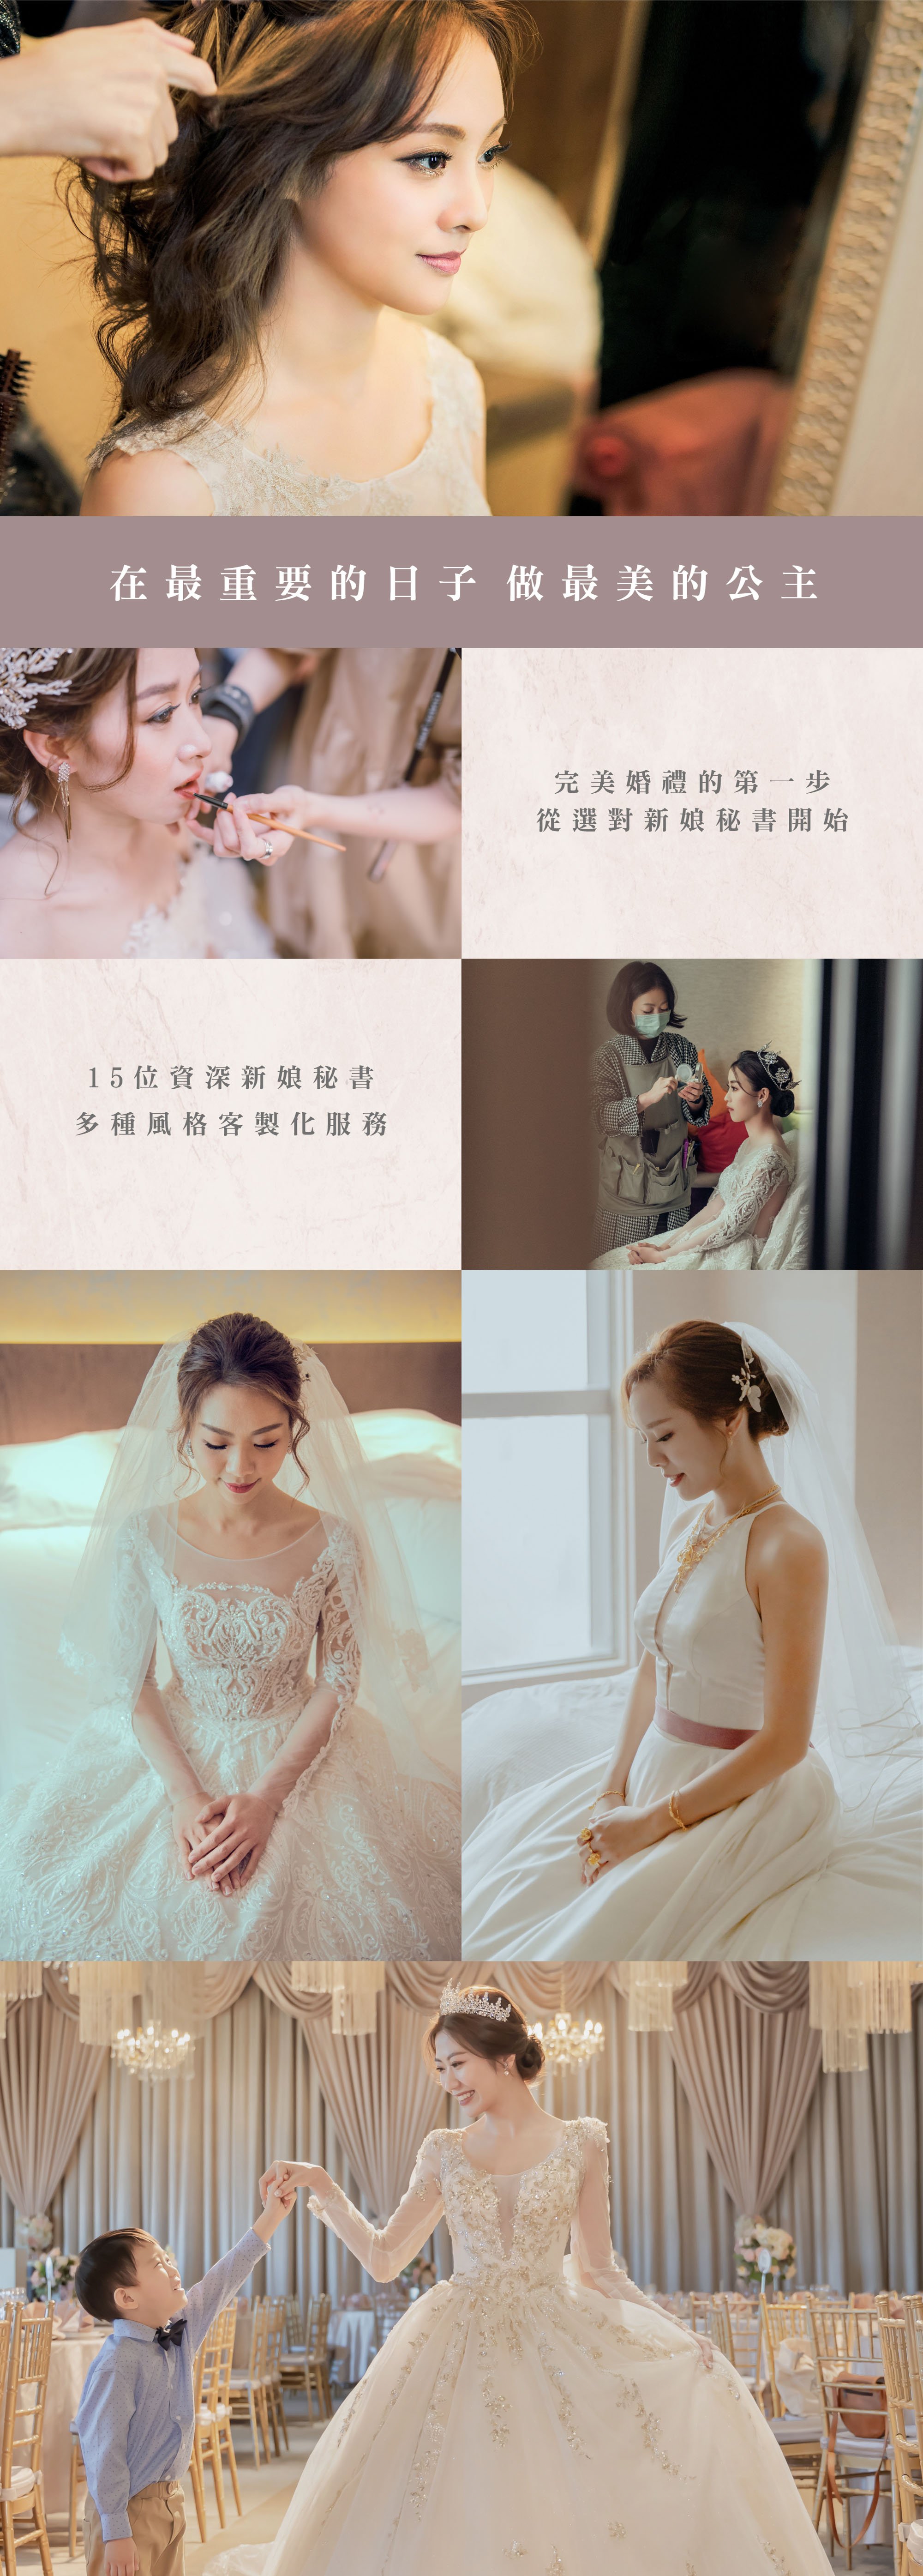 新娘秘書服務-台北婚紗